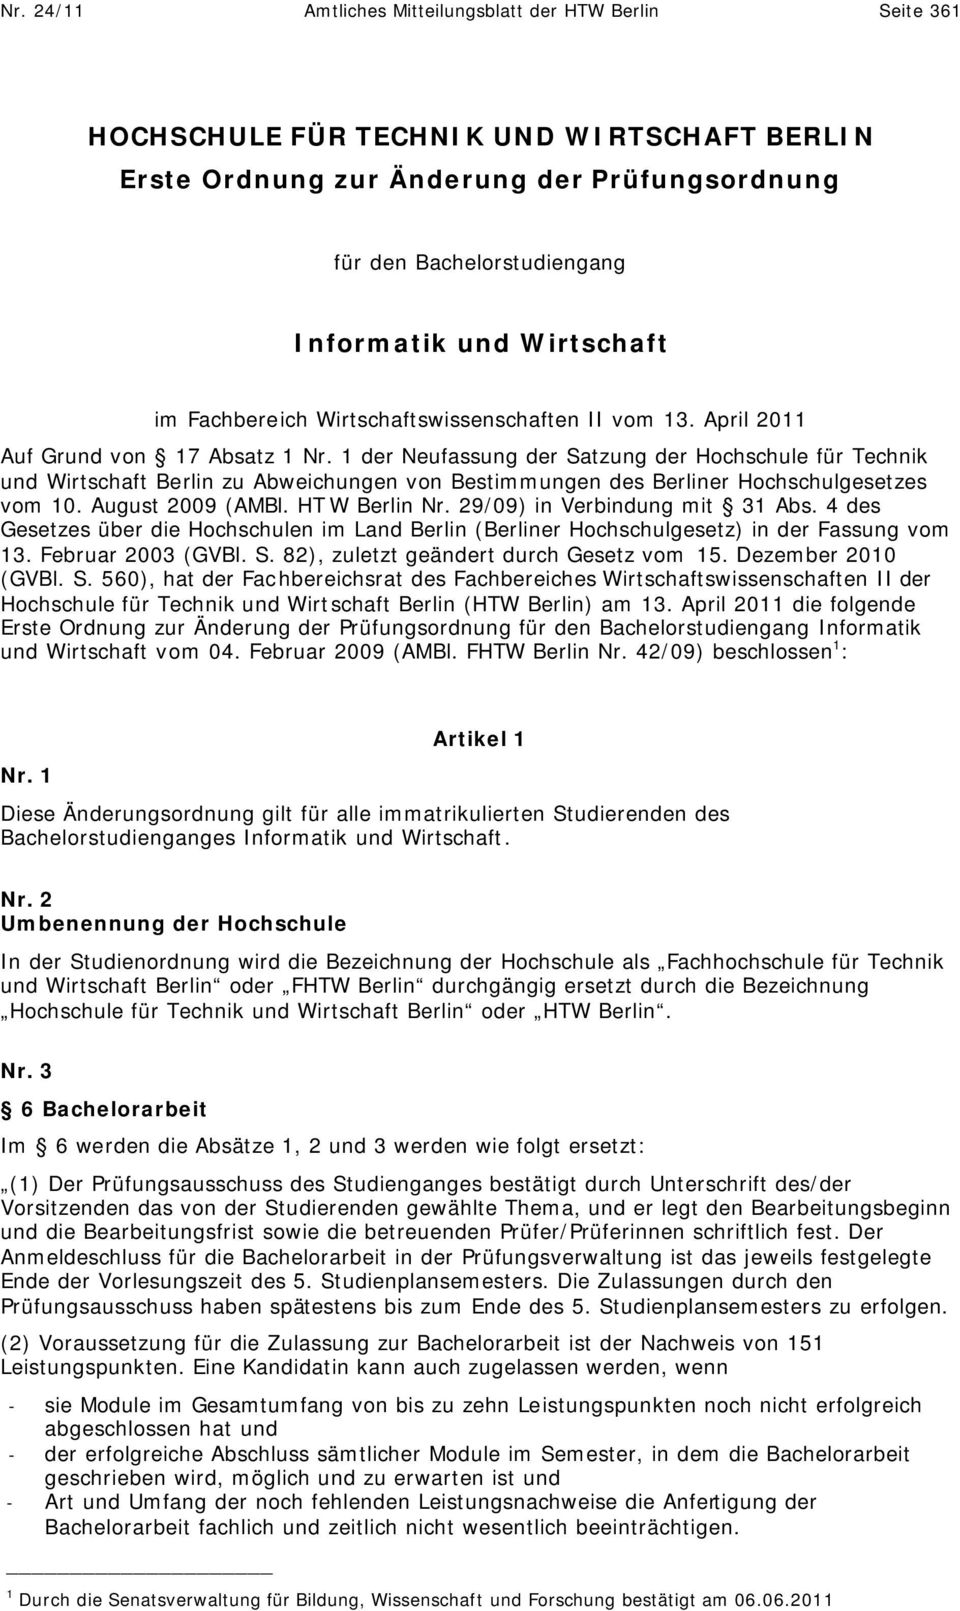 1 der Neufassung der Satzung der Hochschule für Technik und Wirtschaft Berlin zu Abweichungen von Bestimmungen des Berliner Hochschulgesetzes vom 10. August 2009 (AMBl. HT W Berlin Nr.